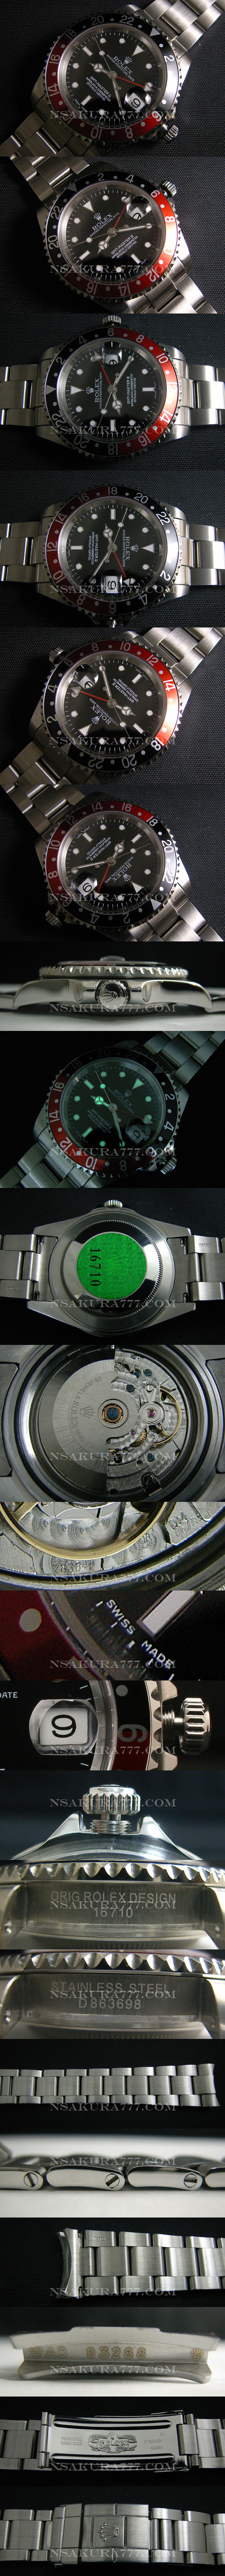 レプリカ時計ロレックス GMT短針単独稼動調整可 ETA 白2836-2搭載 - ウインドウを閉じる